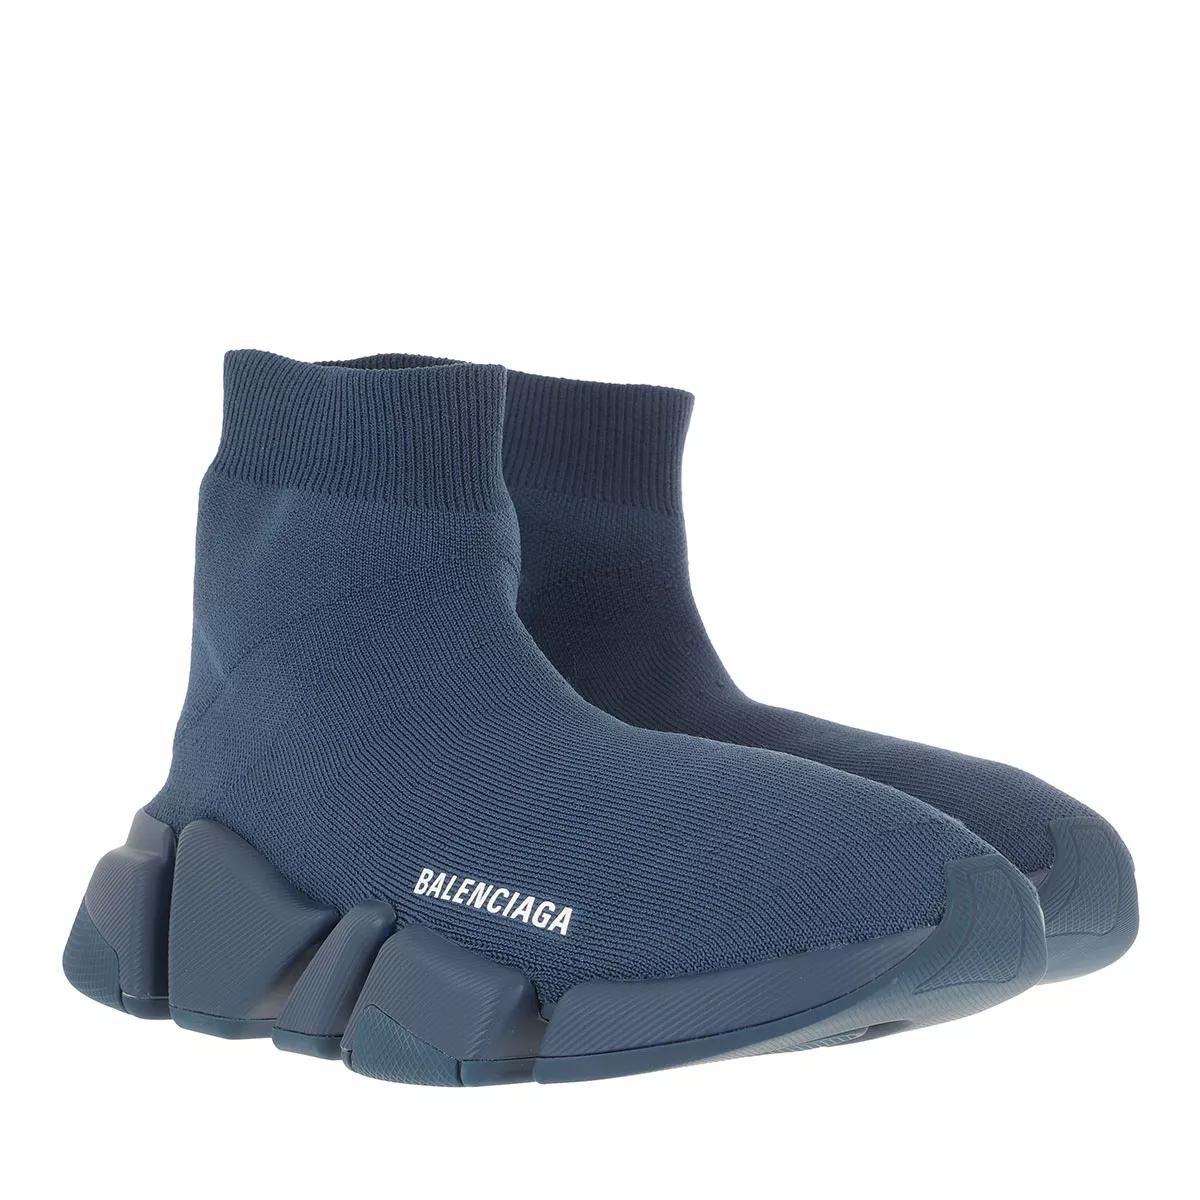 Balenciaga Sneakers - Speed 2.0 Strech Sneakers - Gr. 37 (EU) - in Blau - für Damen von Balenciaga